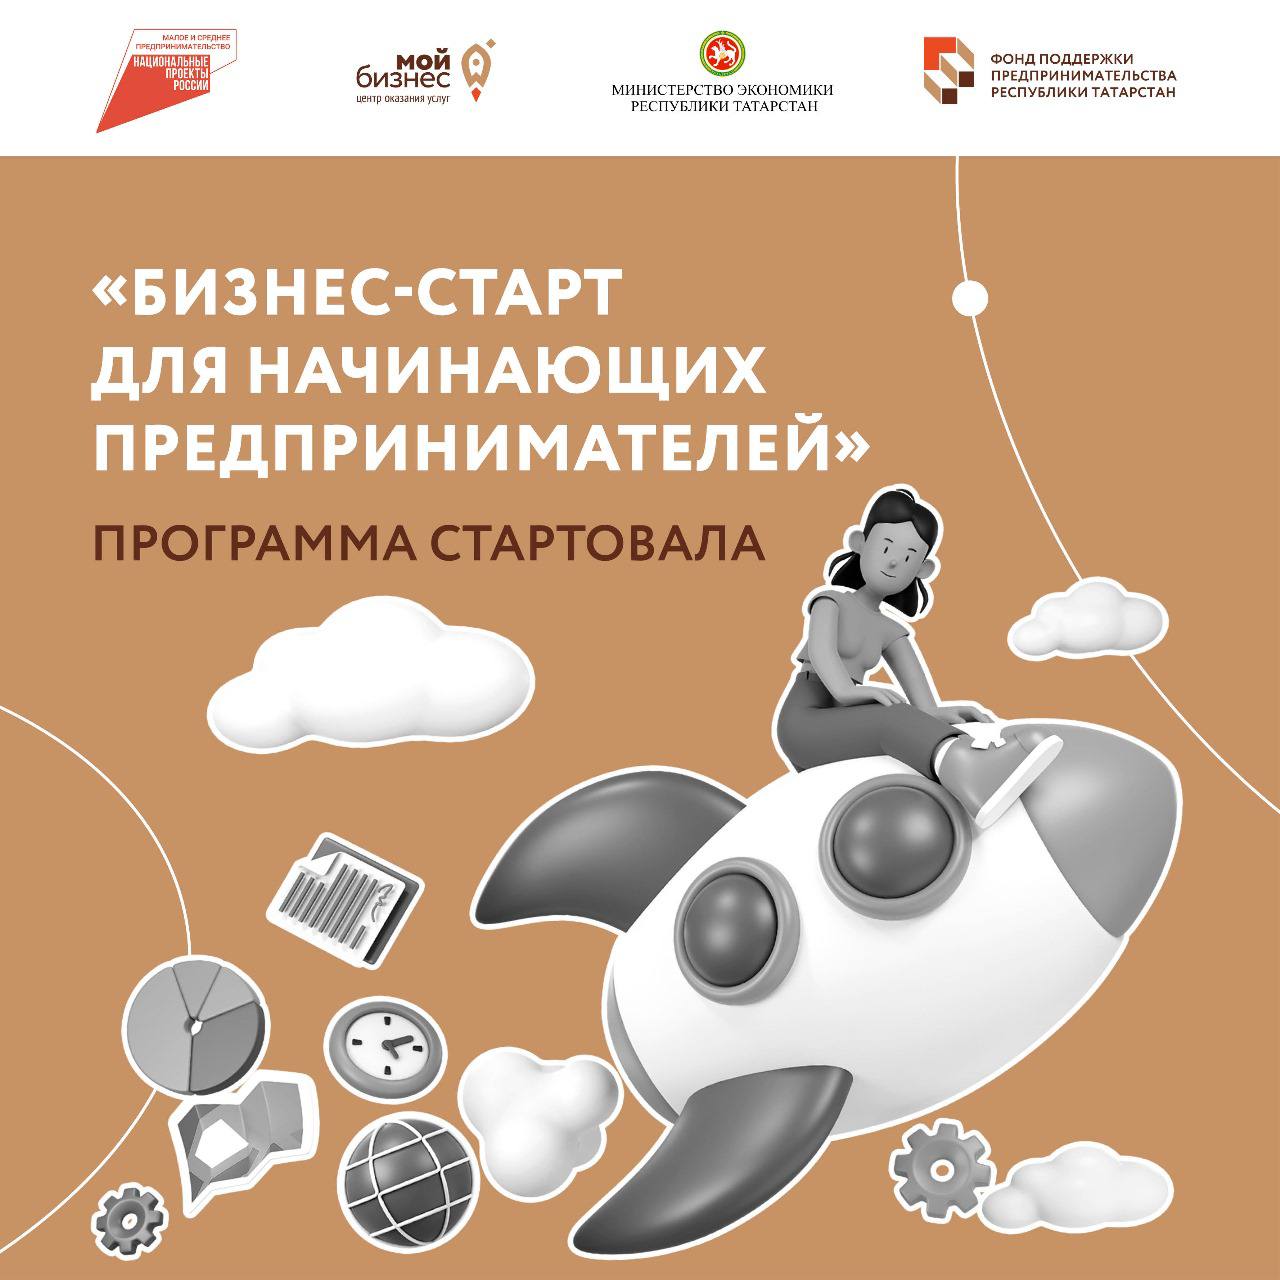 В Республике Татарстан запустили обучающую программу «Бизнес-старт для начинающих предпринимателей».